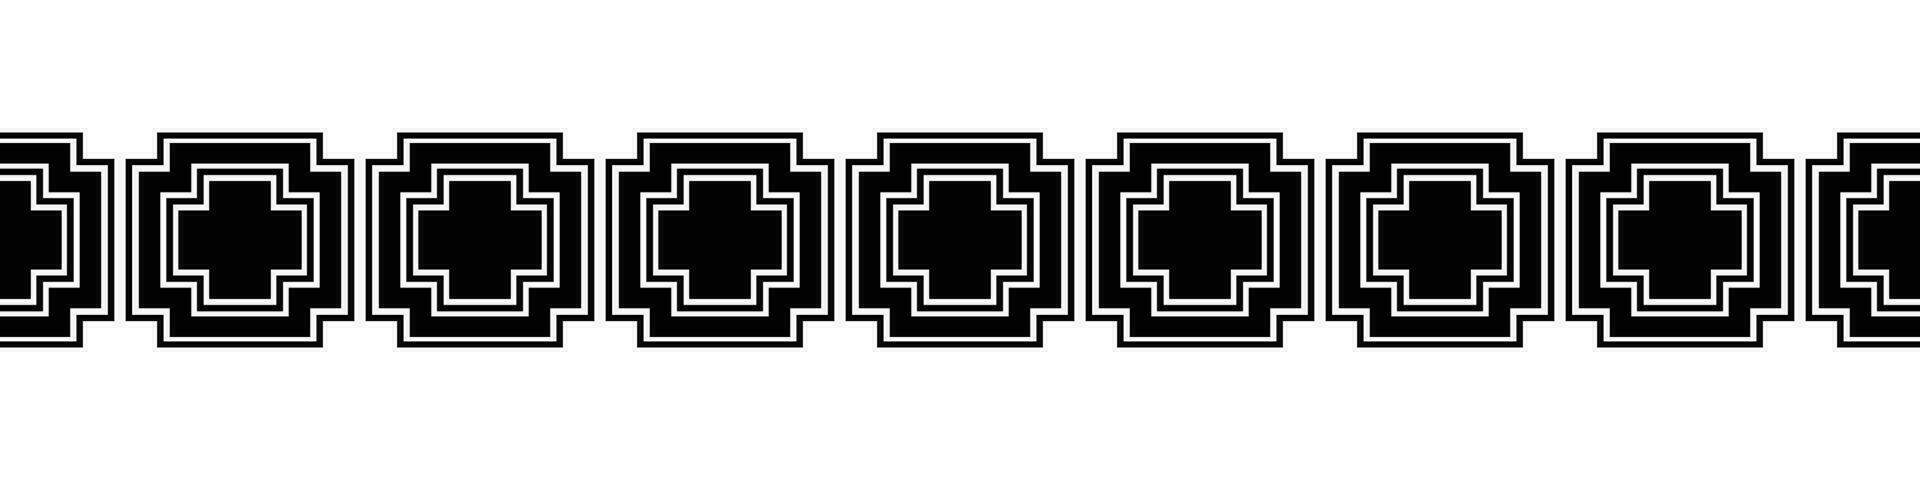 Preto fronteira. asteca tribal desatado padronizar dentro Preto e branco. abstrato étnico geométrico arte impressão Projeto para têxtil modelo, tecido, tapete, ornamento, papel de parede, fundo, tapete. vetor